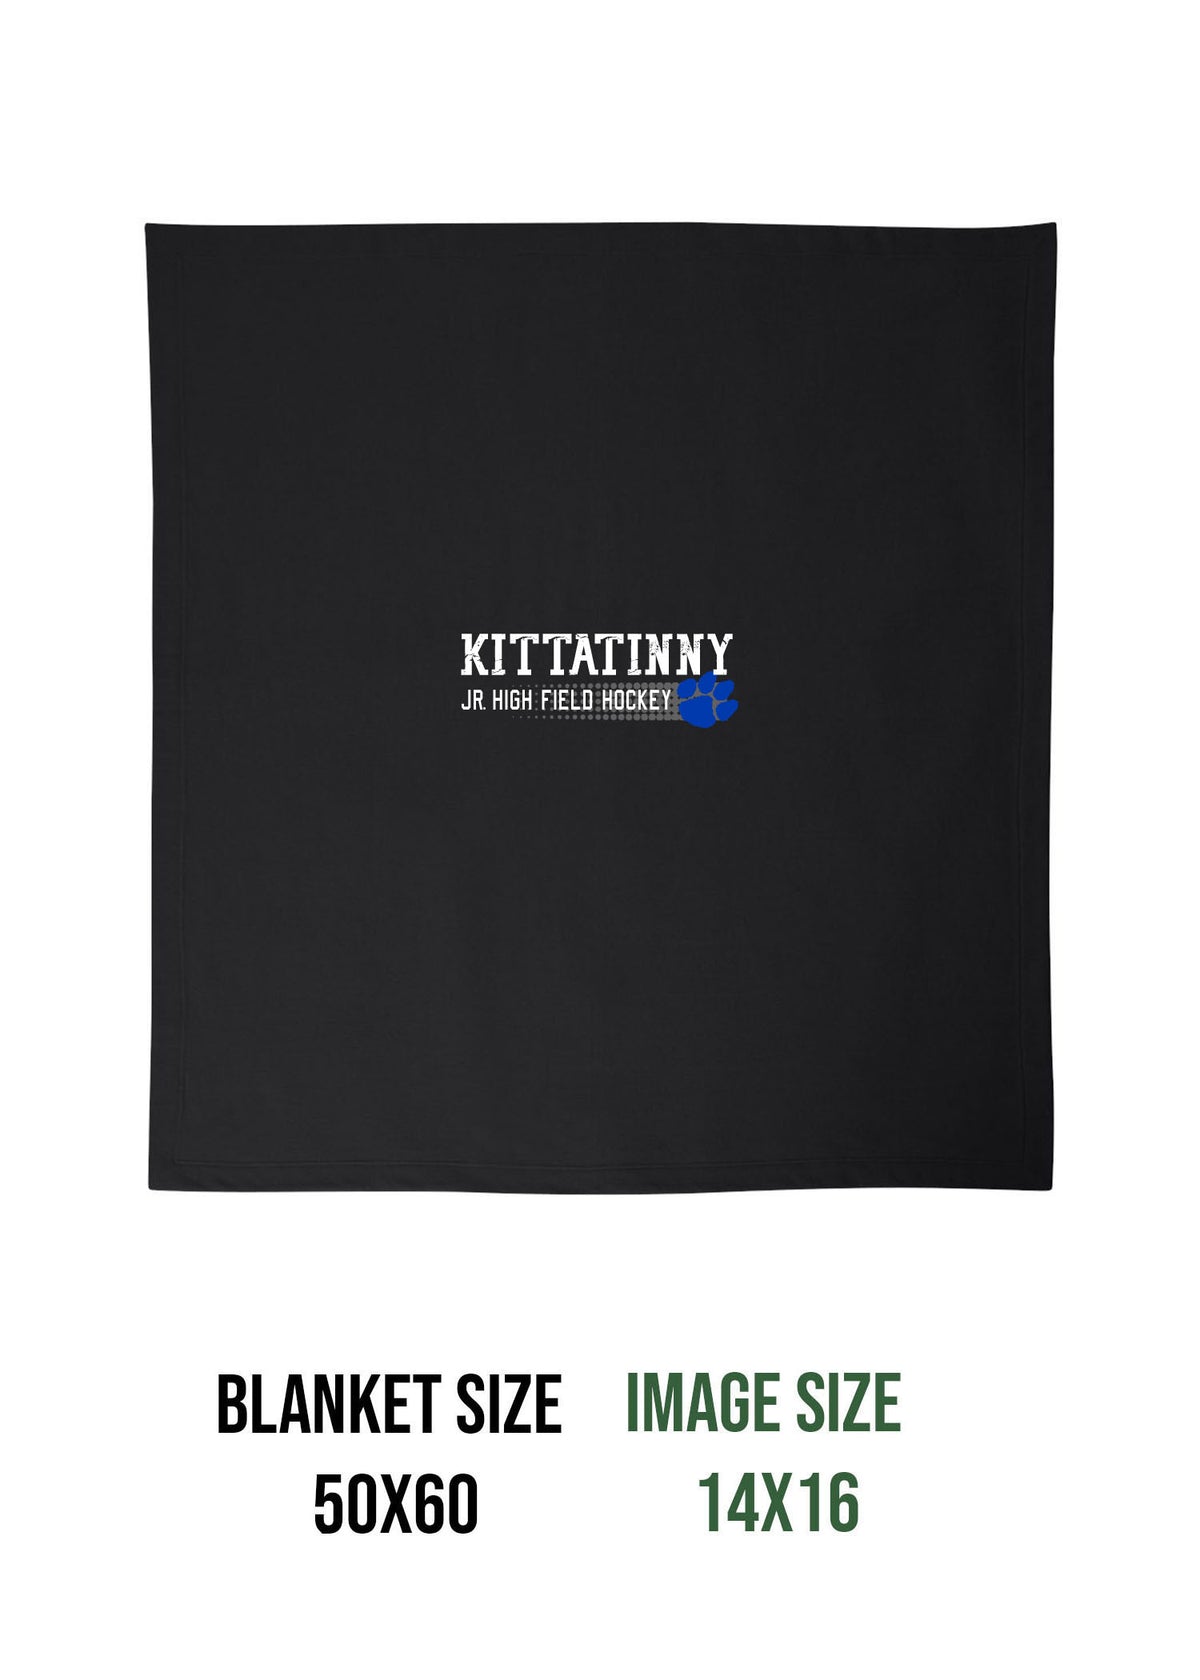 Kittatinny Jr High Field Hockey Design 3 Blanket